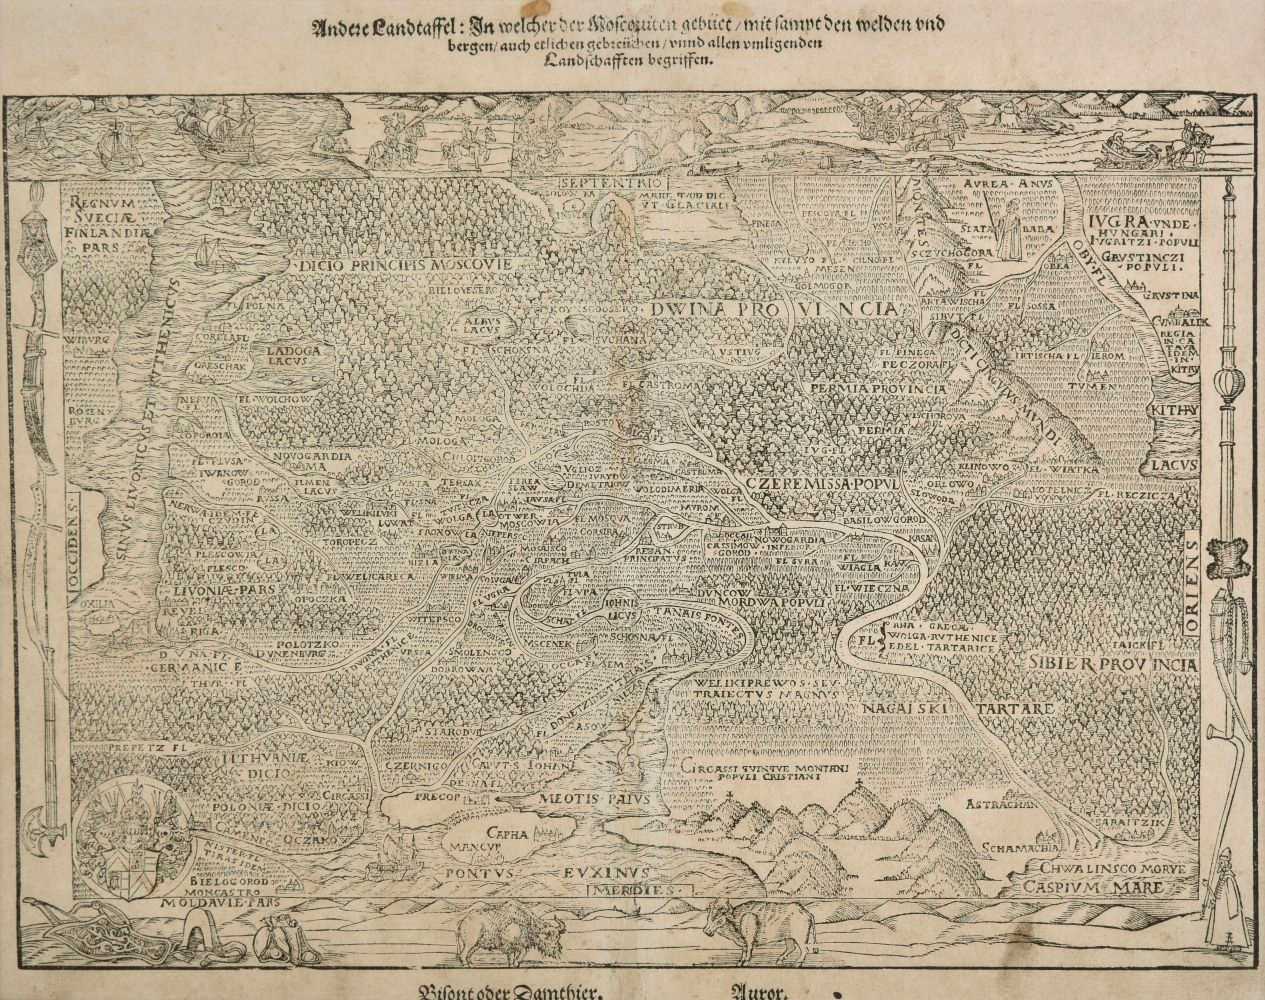 Lot 144 - Russia. Herberstein (Sigmund), Andere Landtaffel: In Welcher Moscauen..., circa 1563